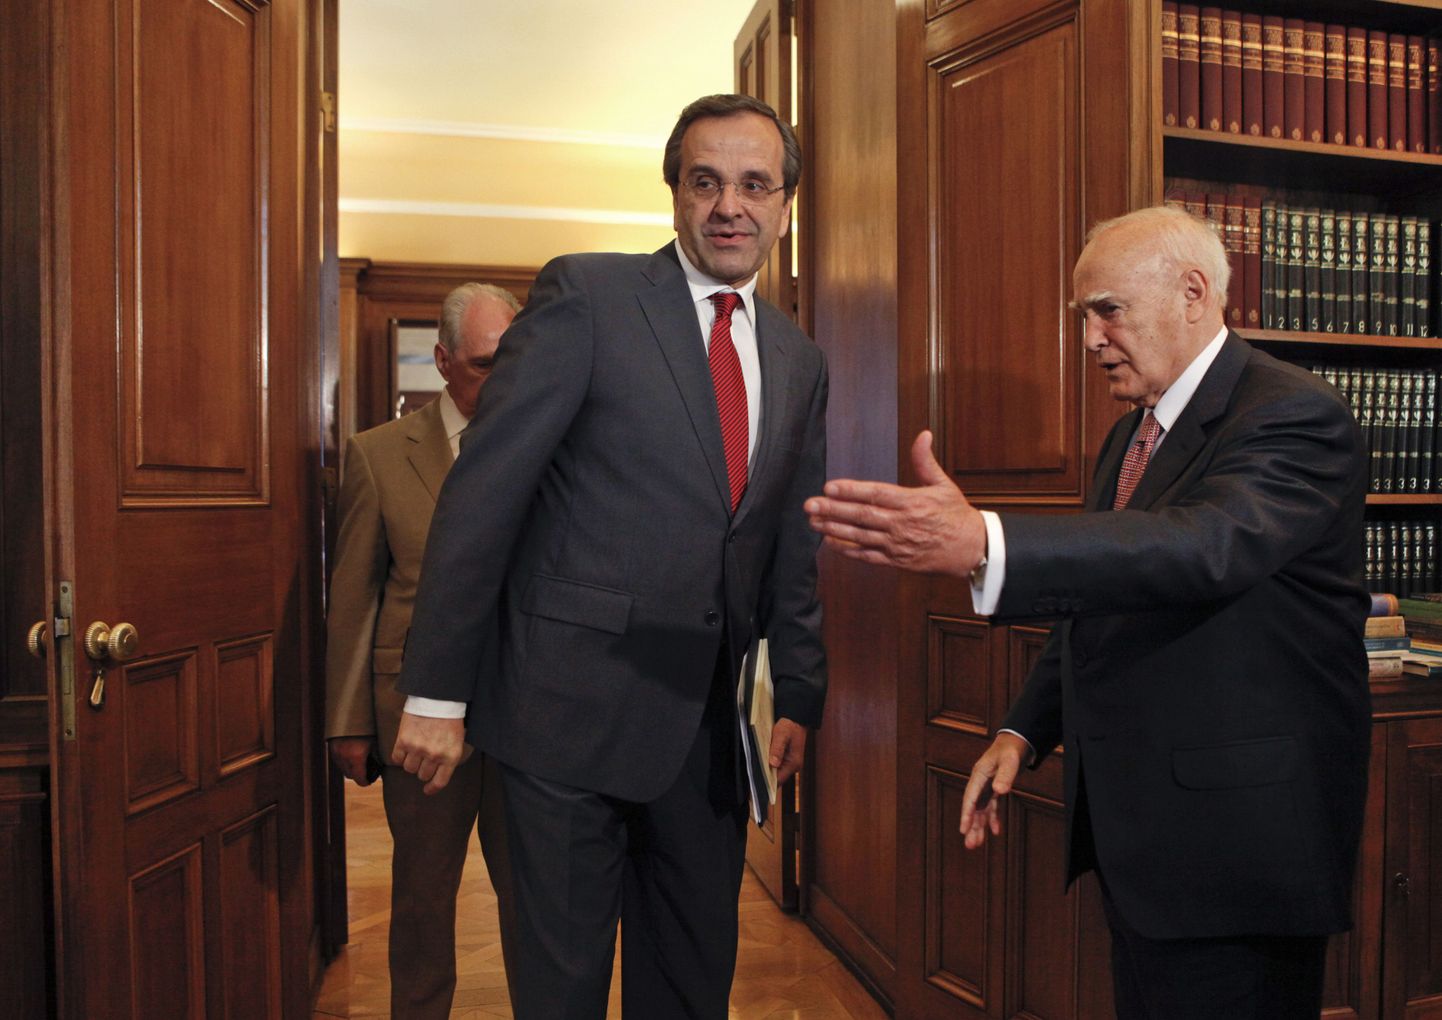 Kreeka president Karolos Papoulias (paremal) täna presidendilossis Uue Demokraatia liidrit Antonis Samarast tervitamas.